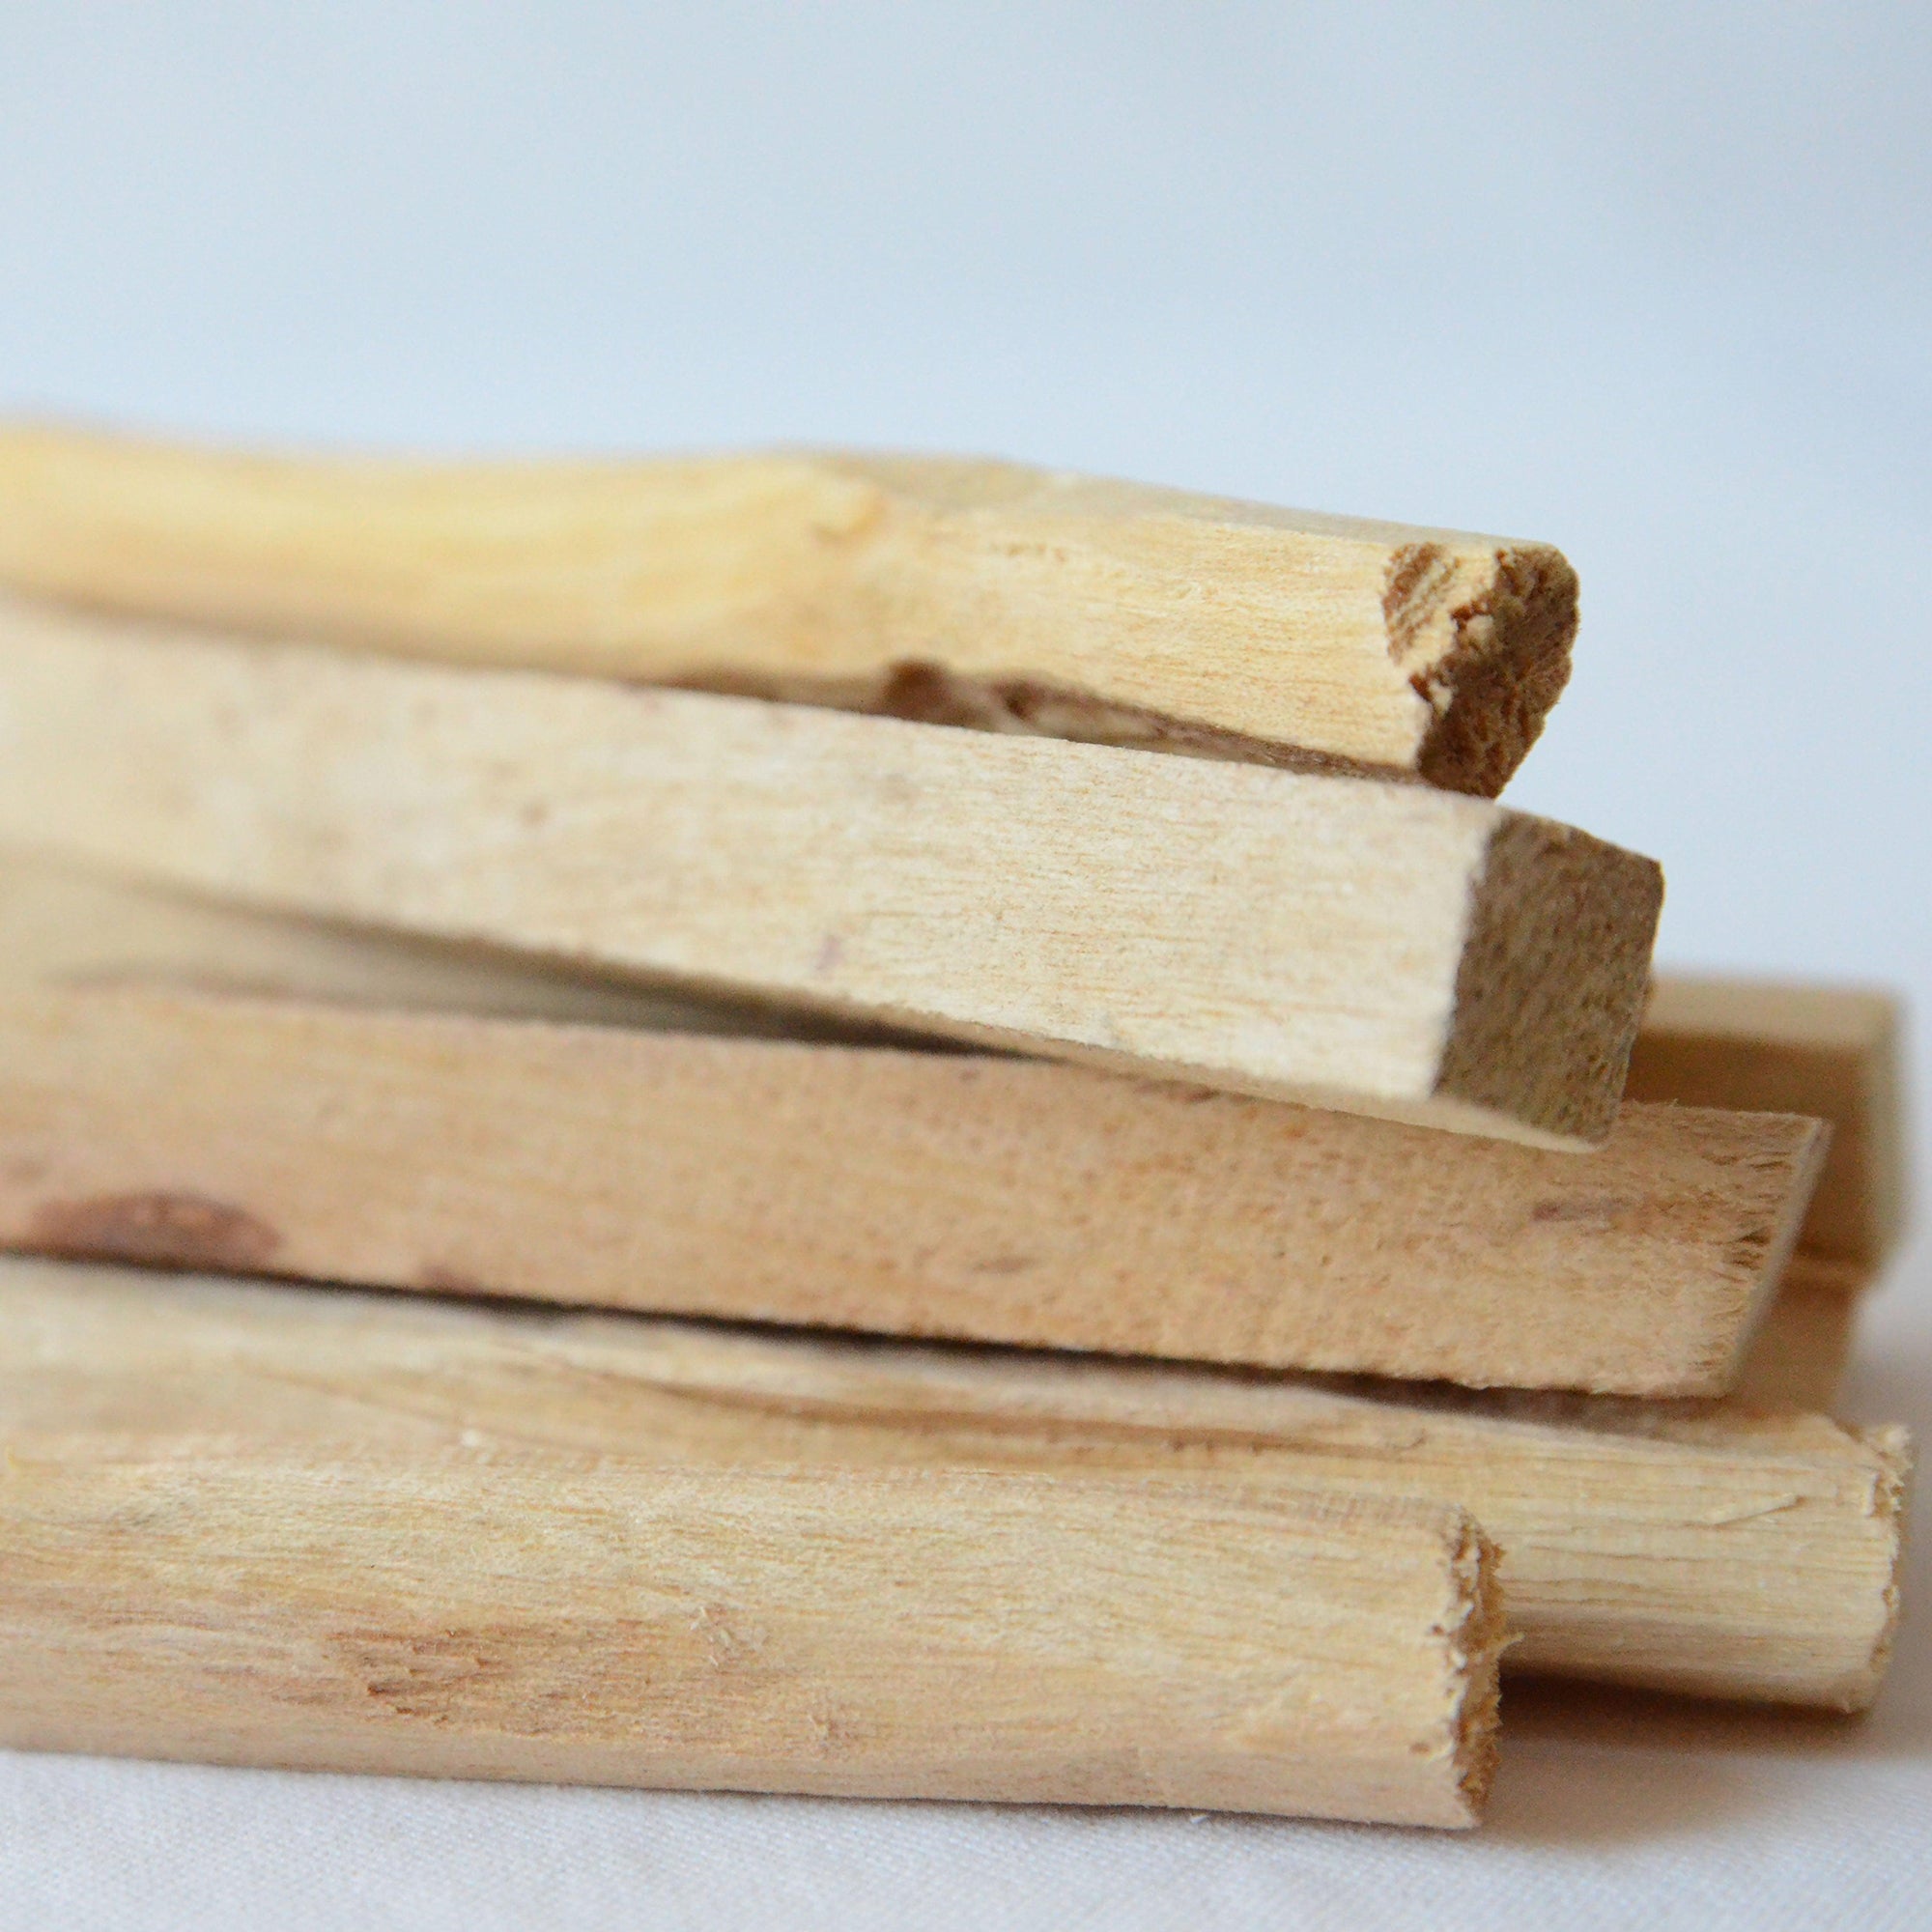 zoom in version; Ecuador palo santo wood sticks bundle.